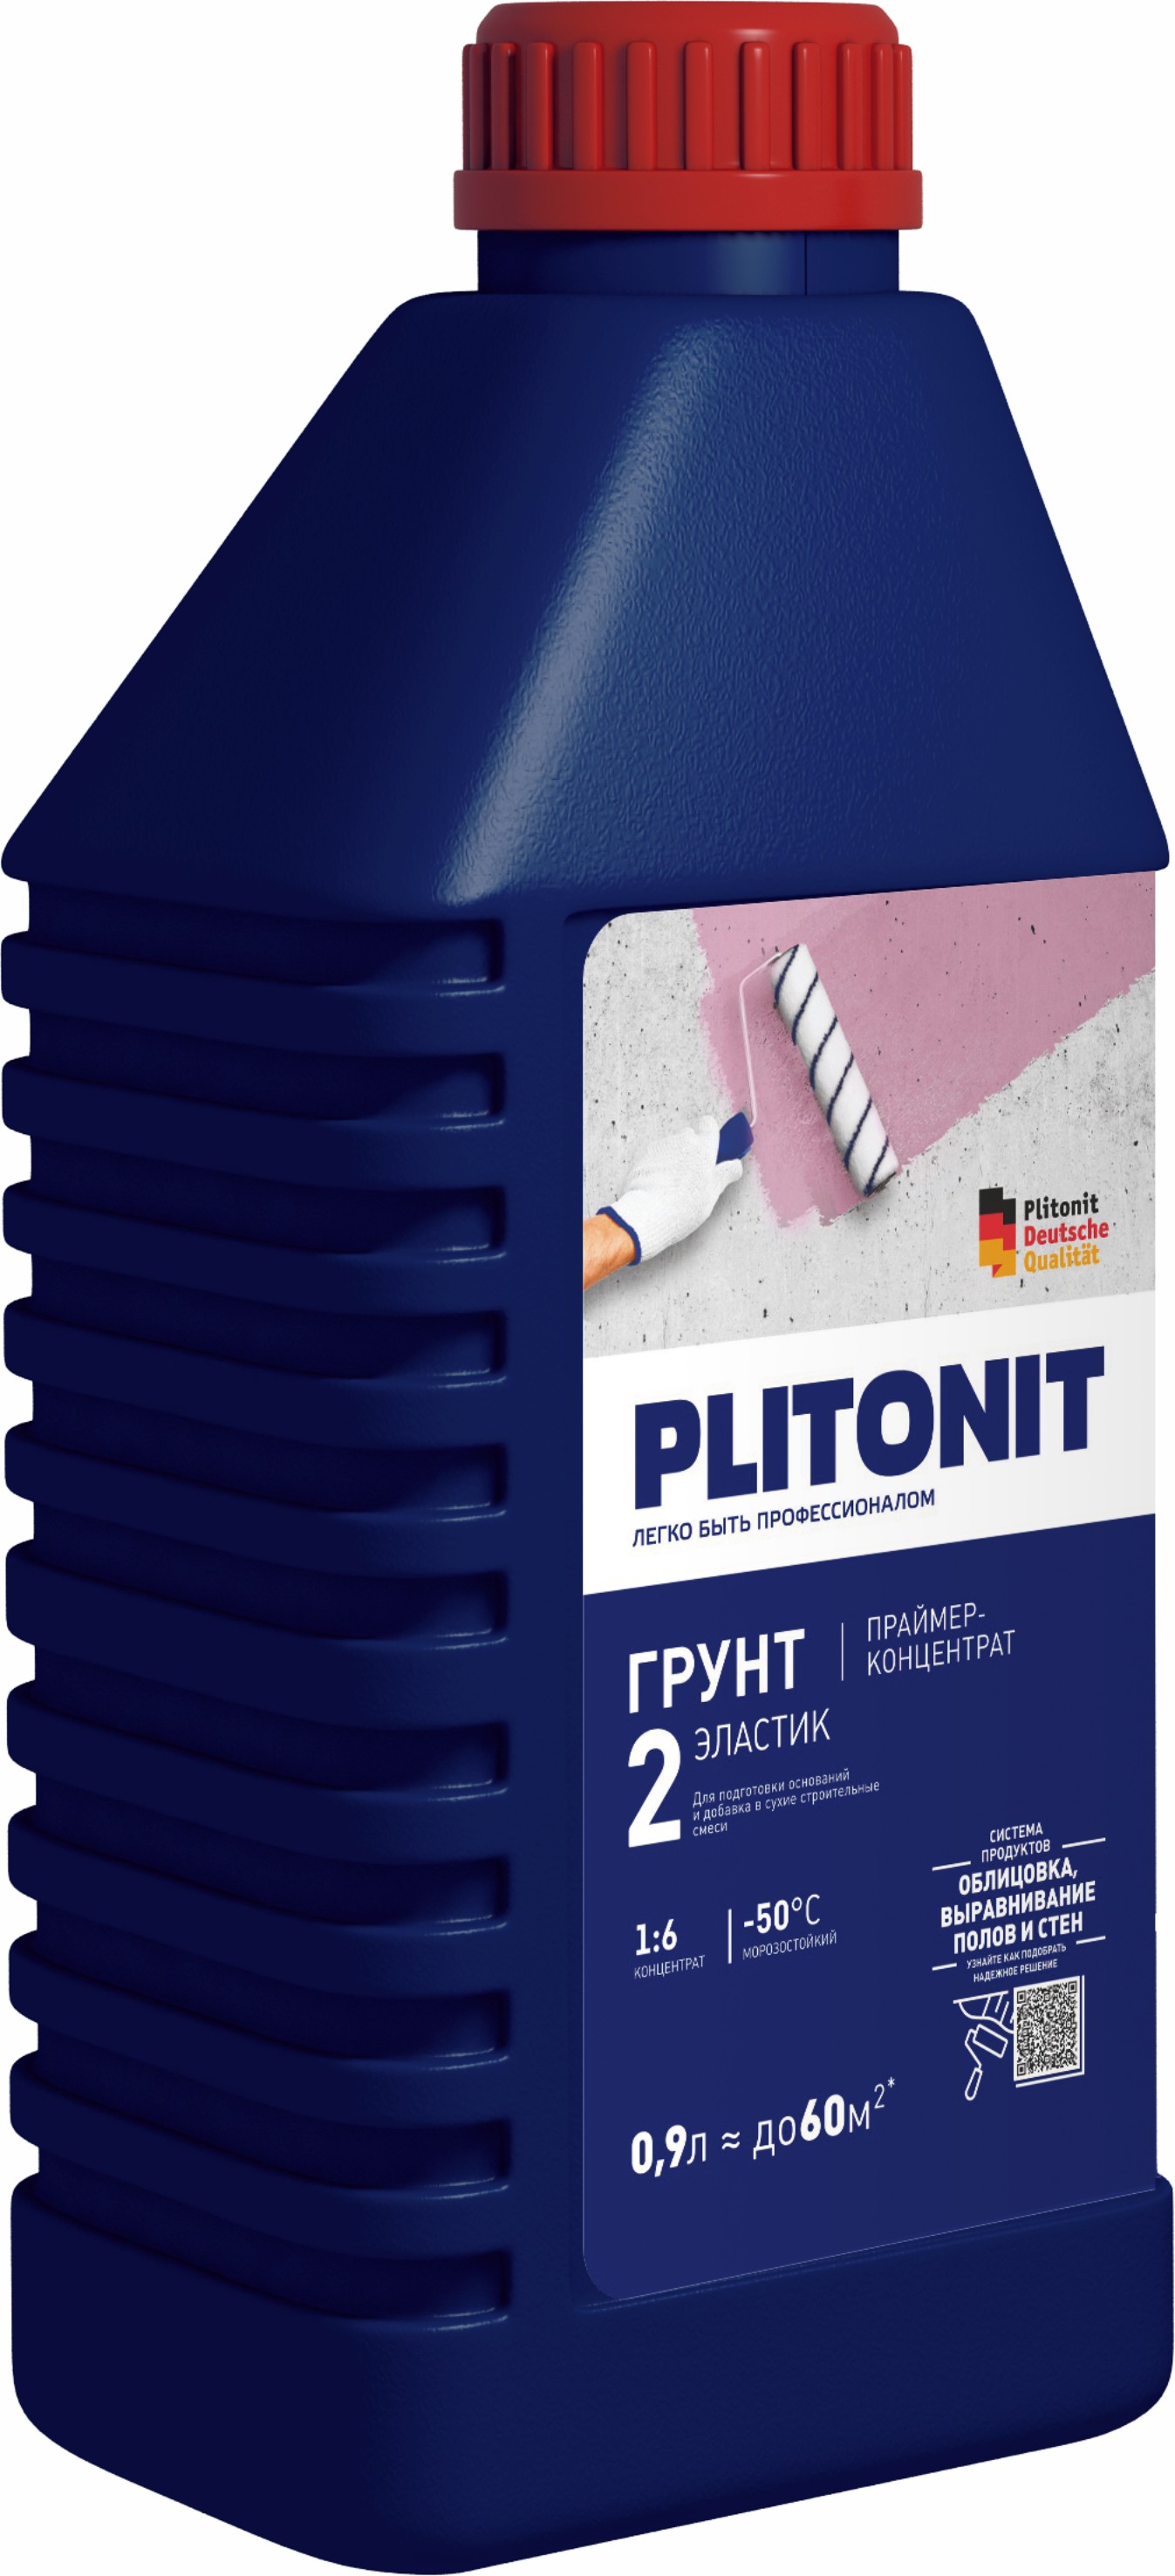 PLITONIT Грунт 2 Эластик -0,9 праймер-концентрат и пластификатор 1:6 акрилатный для подготовки оснований 